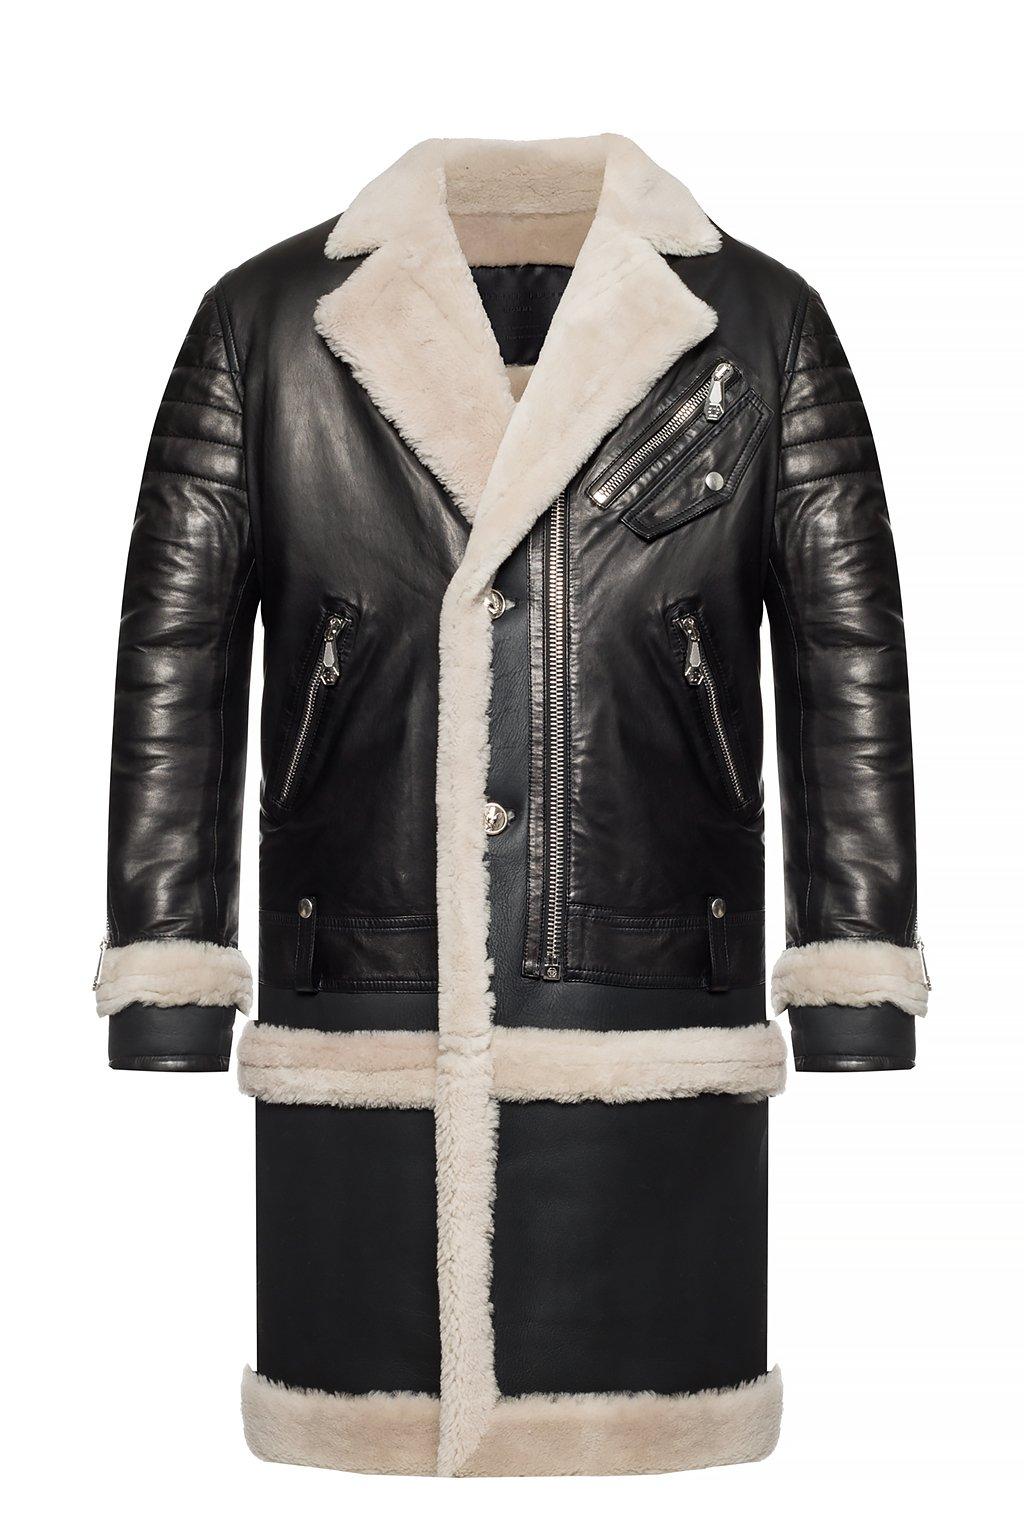 Philipp Plein Leather Coat With Fur Trim in Black for Men - Lyst